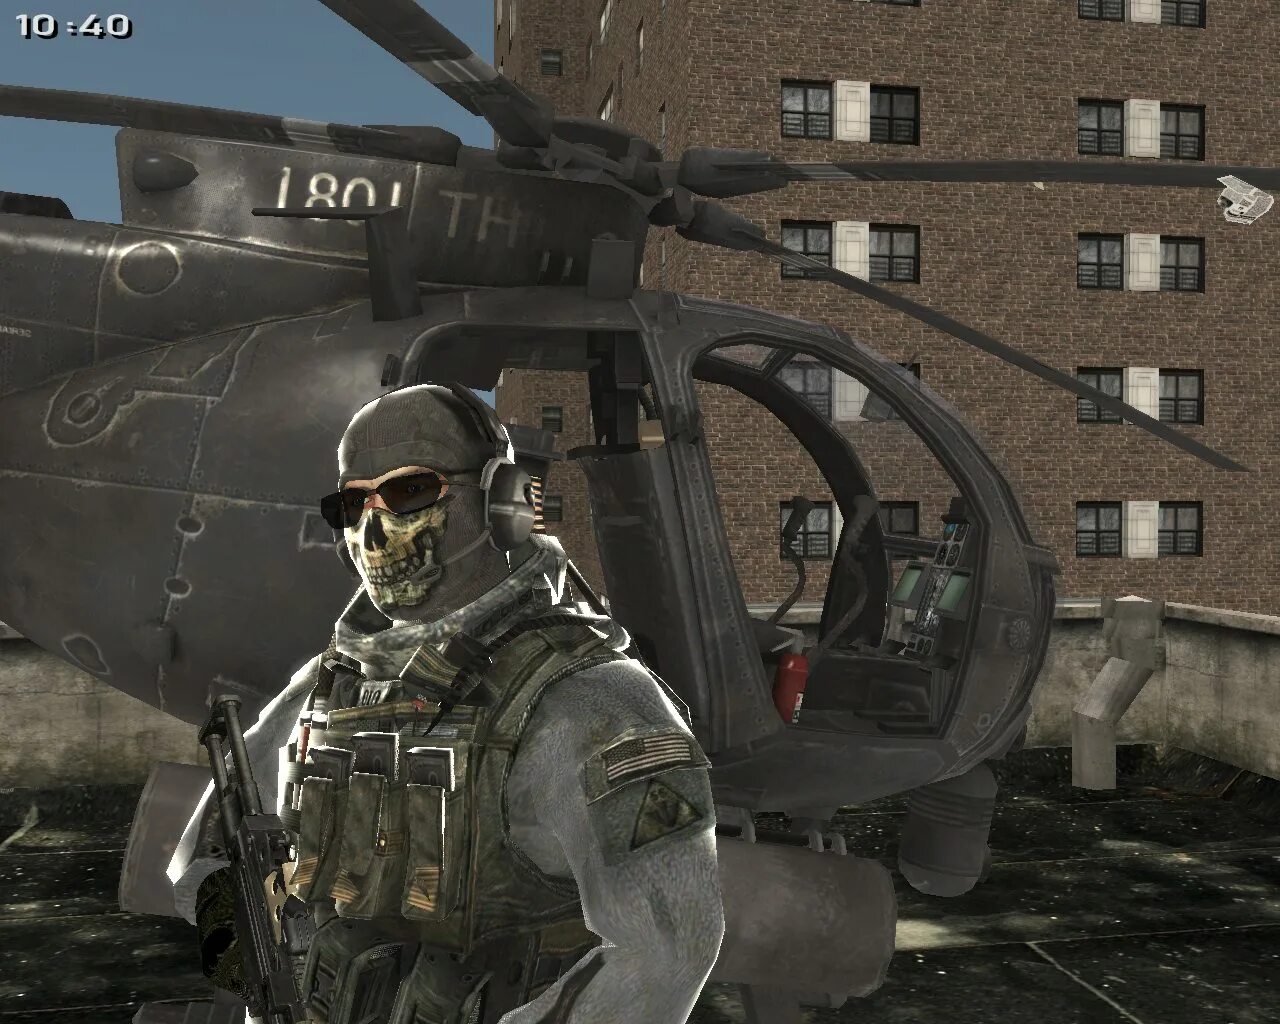 Гоуст mw3. Гоуст Модерн варфаер 2. Call of Duty Modern Warfare 3 гоуст. Калавдюти Модерн варфаер 2 гоуст.